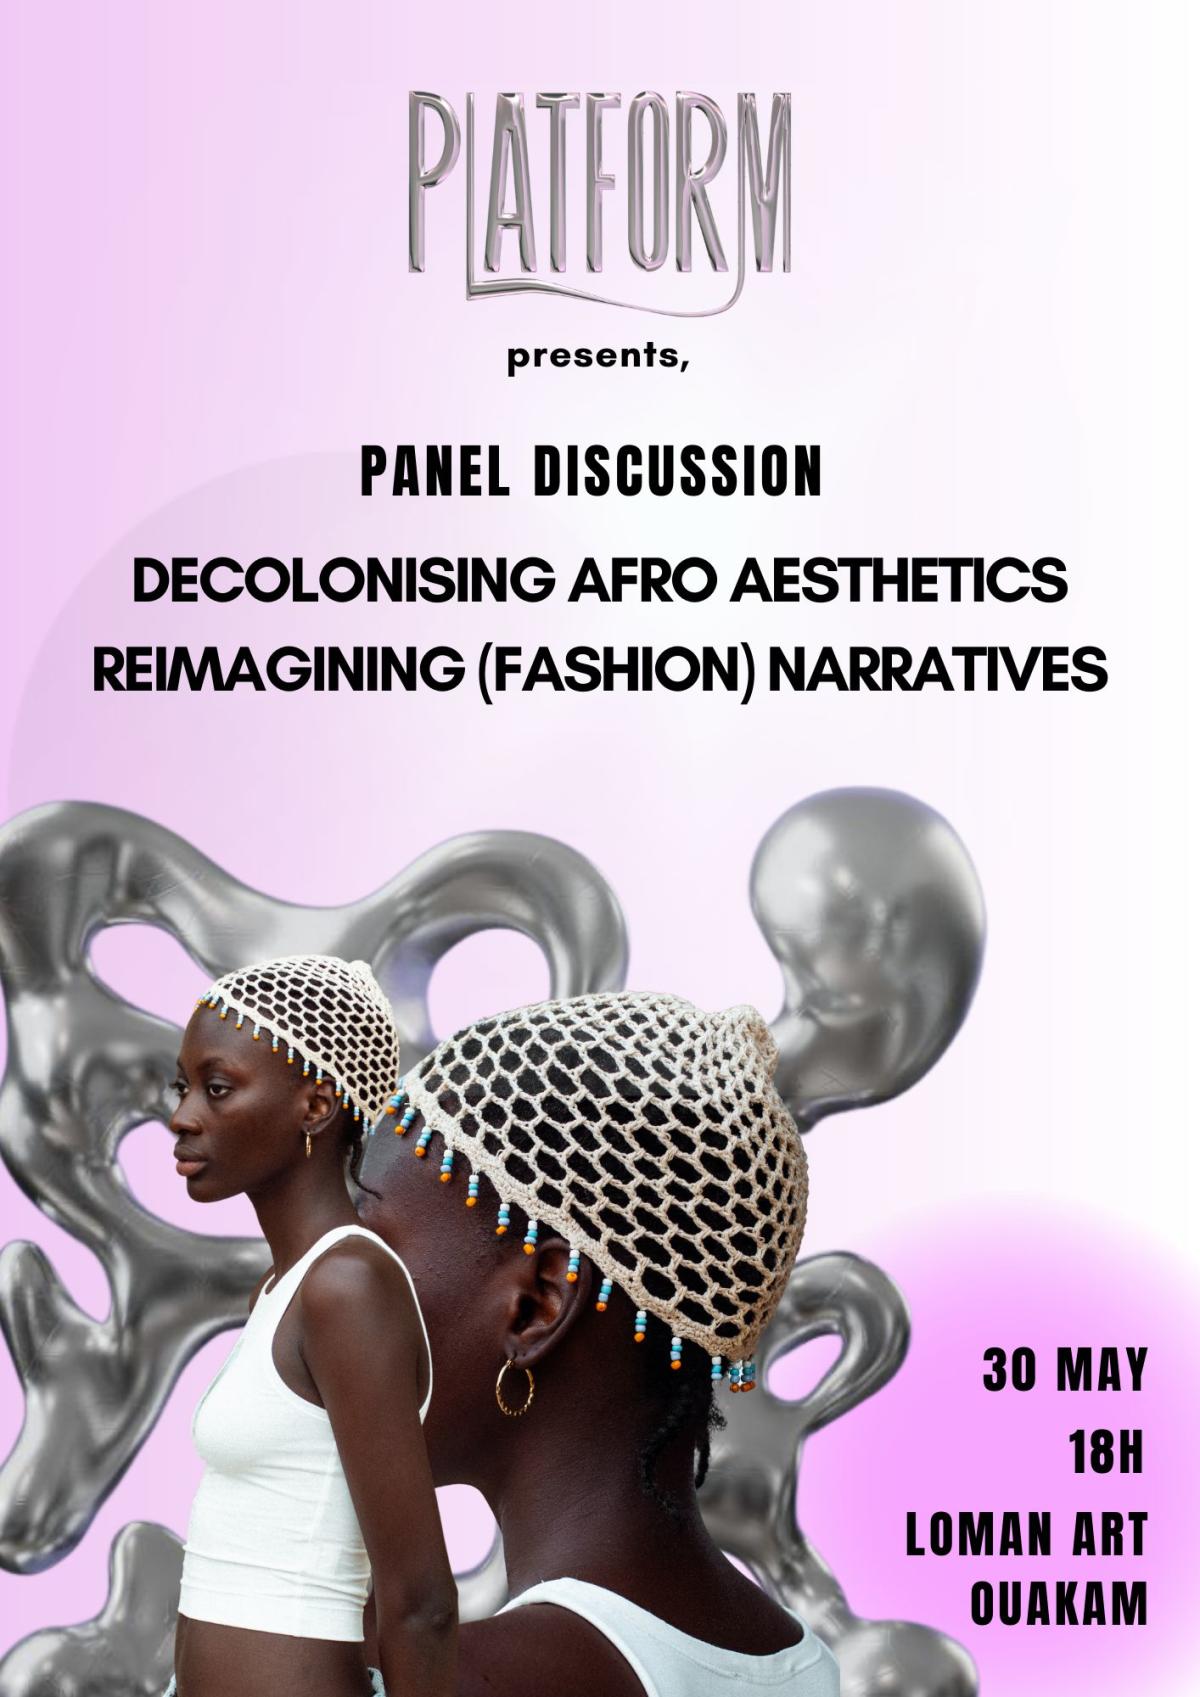 Decolonizing Afro Aesthetics: Reimagining (Fashion) Narratives